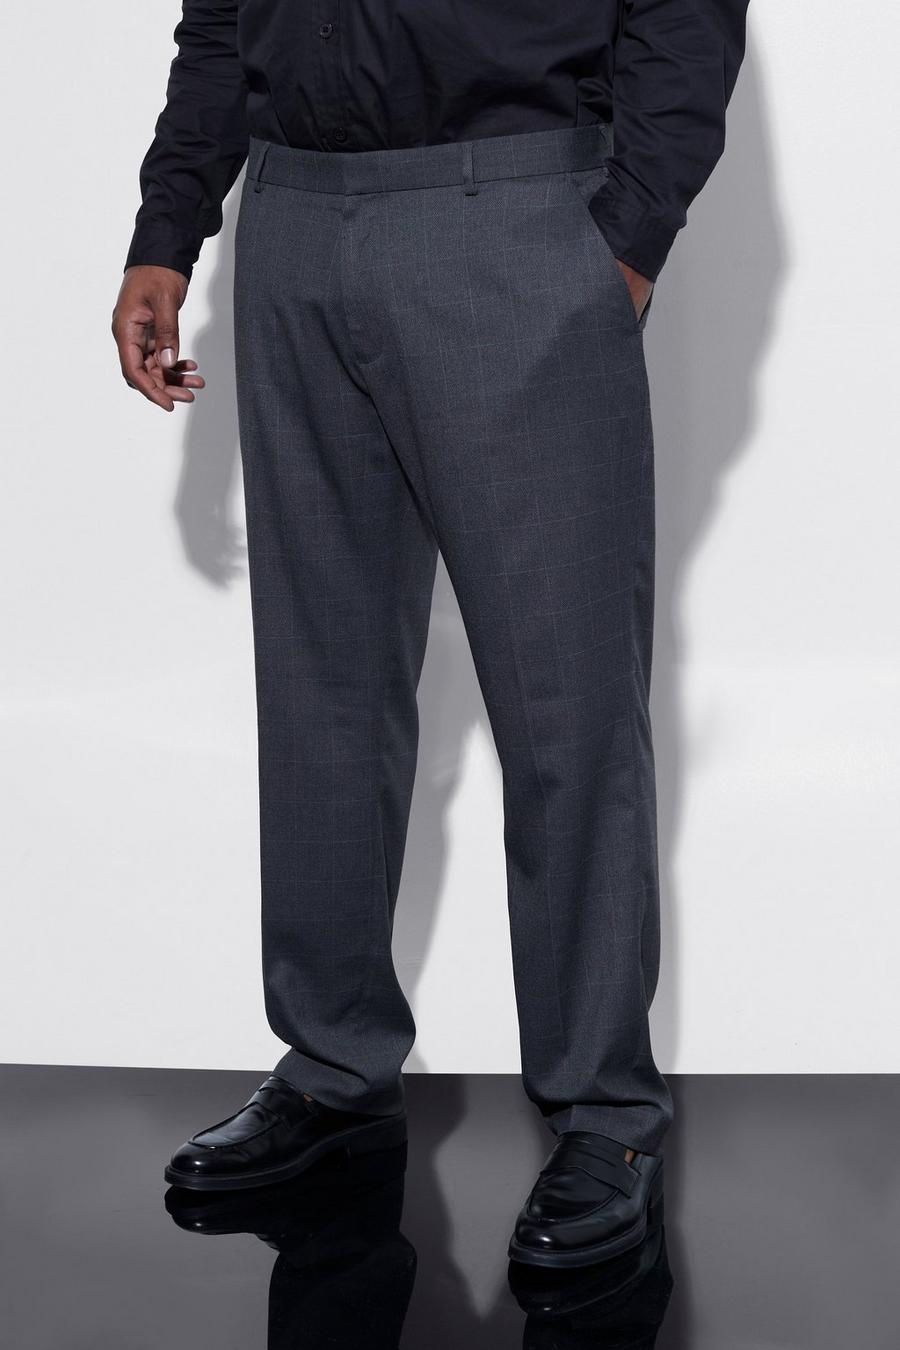 Pantalón Plus ajustado de cuadros entallado, Dark grey grigio